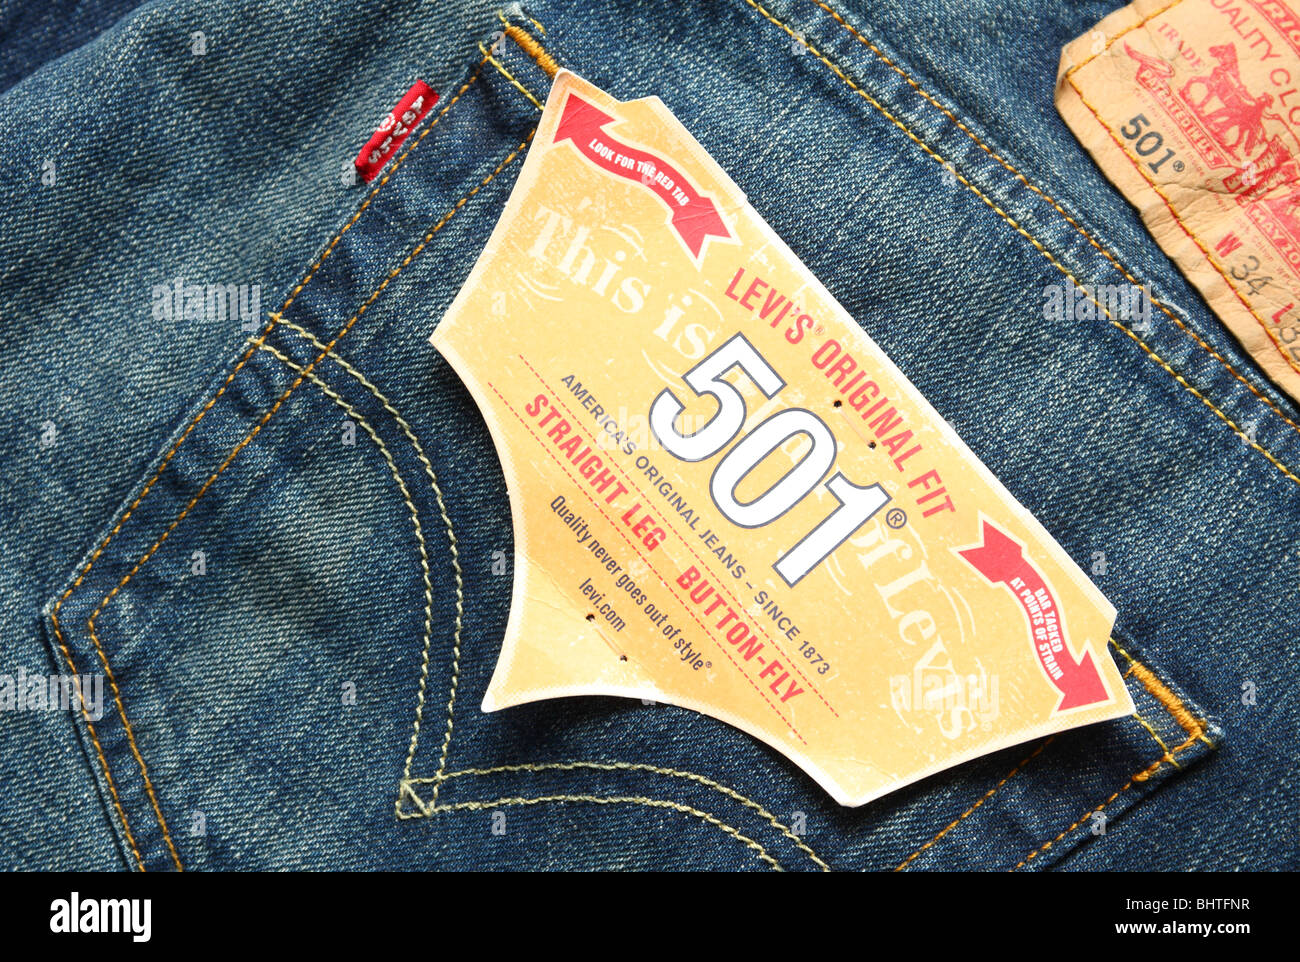 levi's the original jeans label